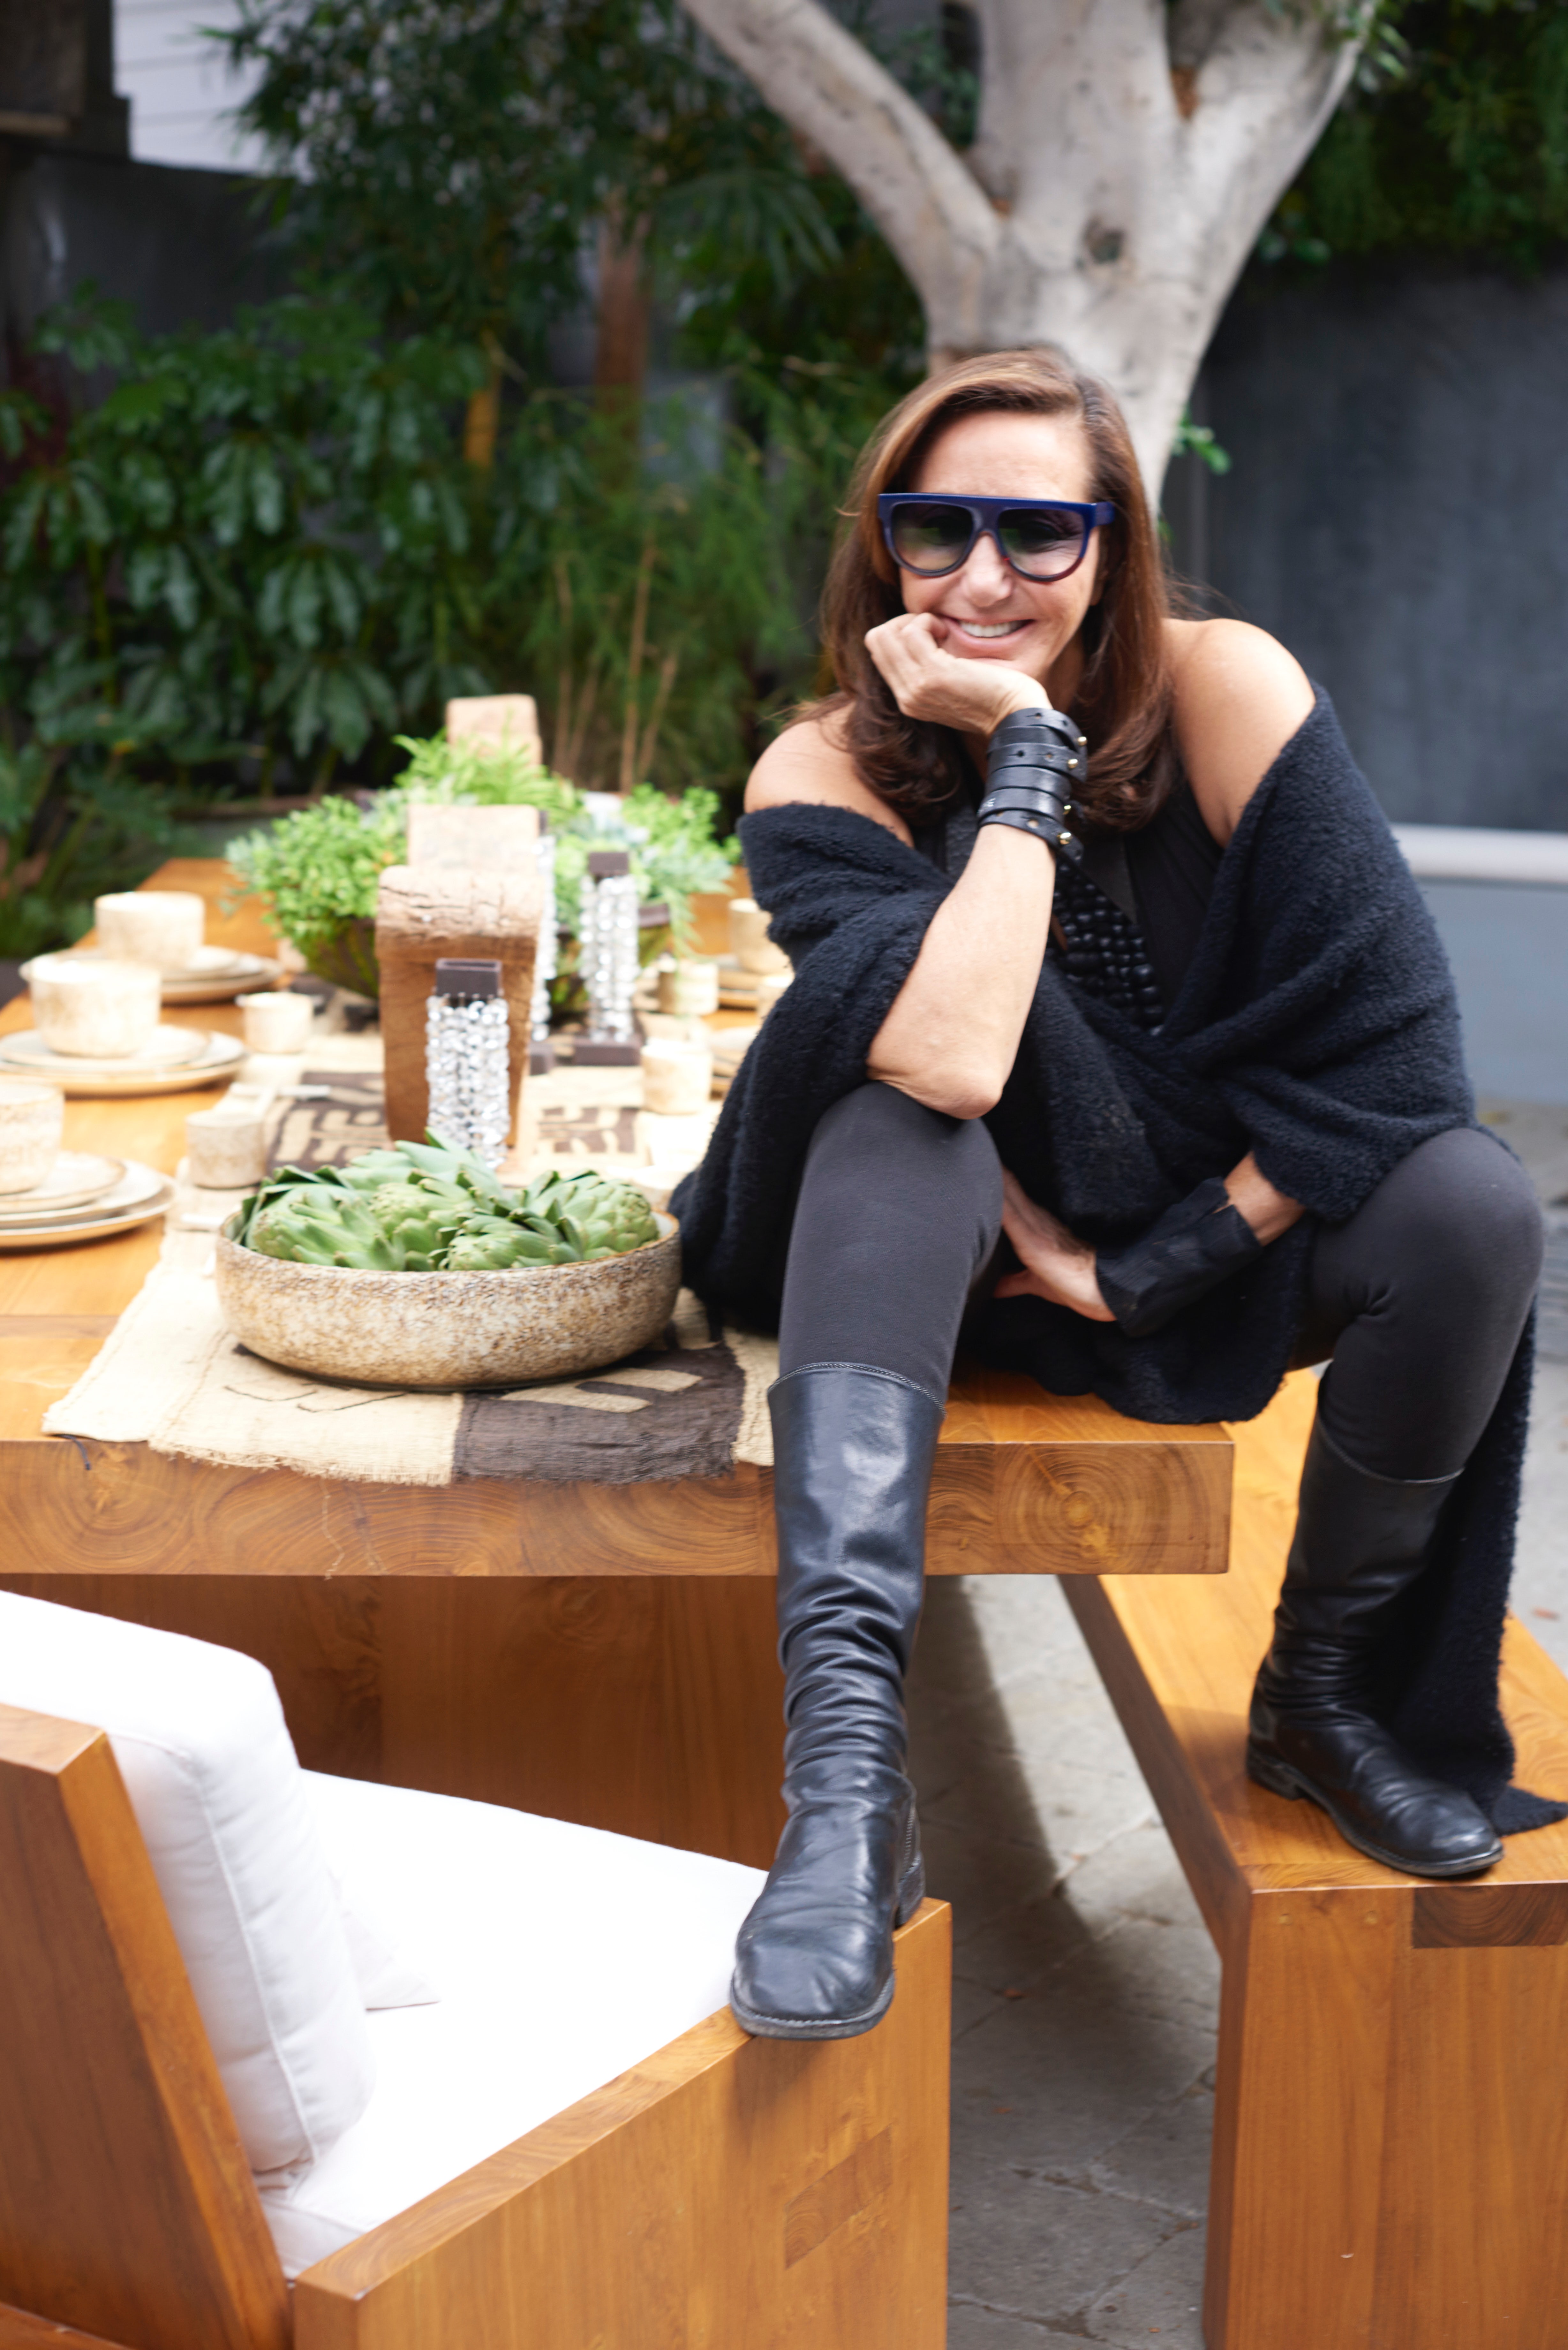 Donna Karan in Mumbai Talks Fashion, Meditation and Travel – WWD